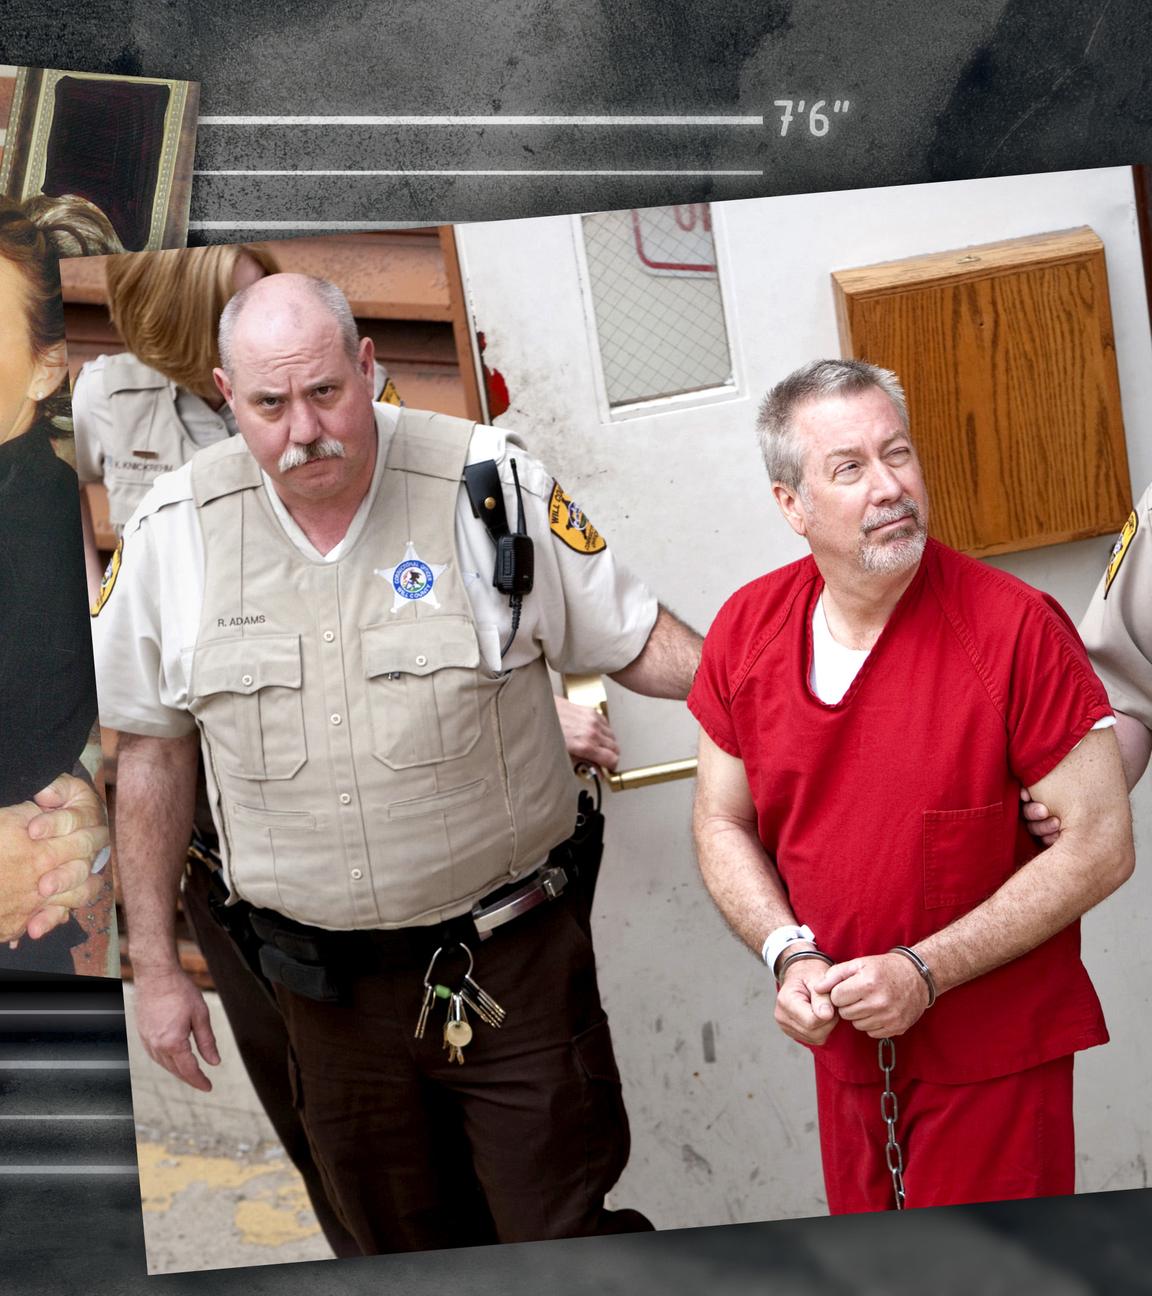 Montage zweier Fotos neben graphischen Elementen: Ein Foto zeigt Drew Peteron 2008 auf dem Weg ins Gericht, das andere Foto zeigt ihn mit seiner vierten Frau 2007.